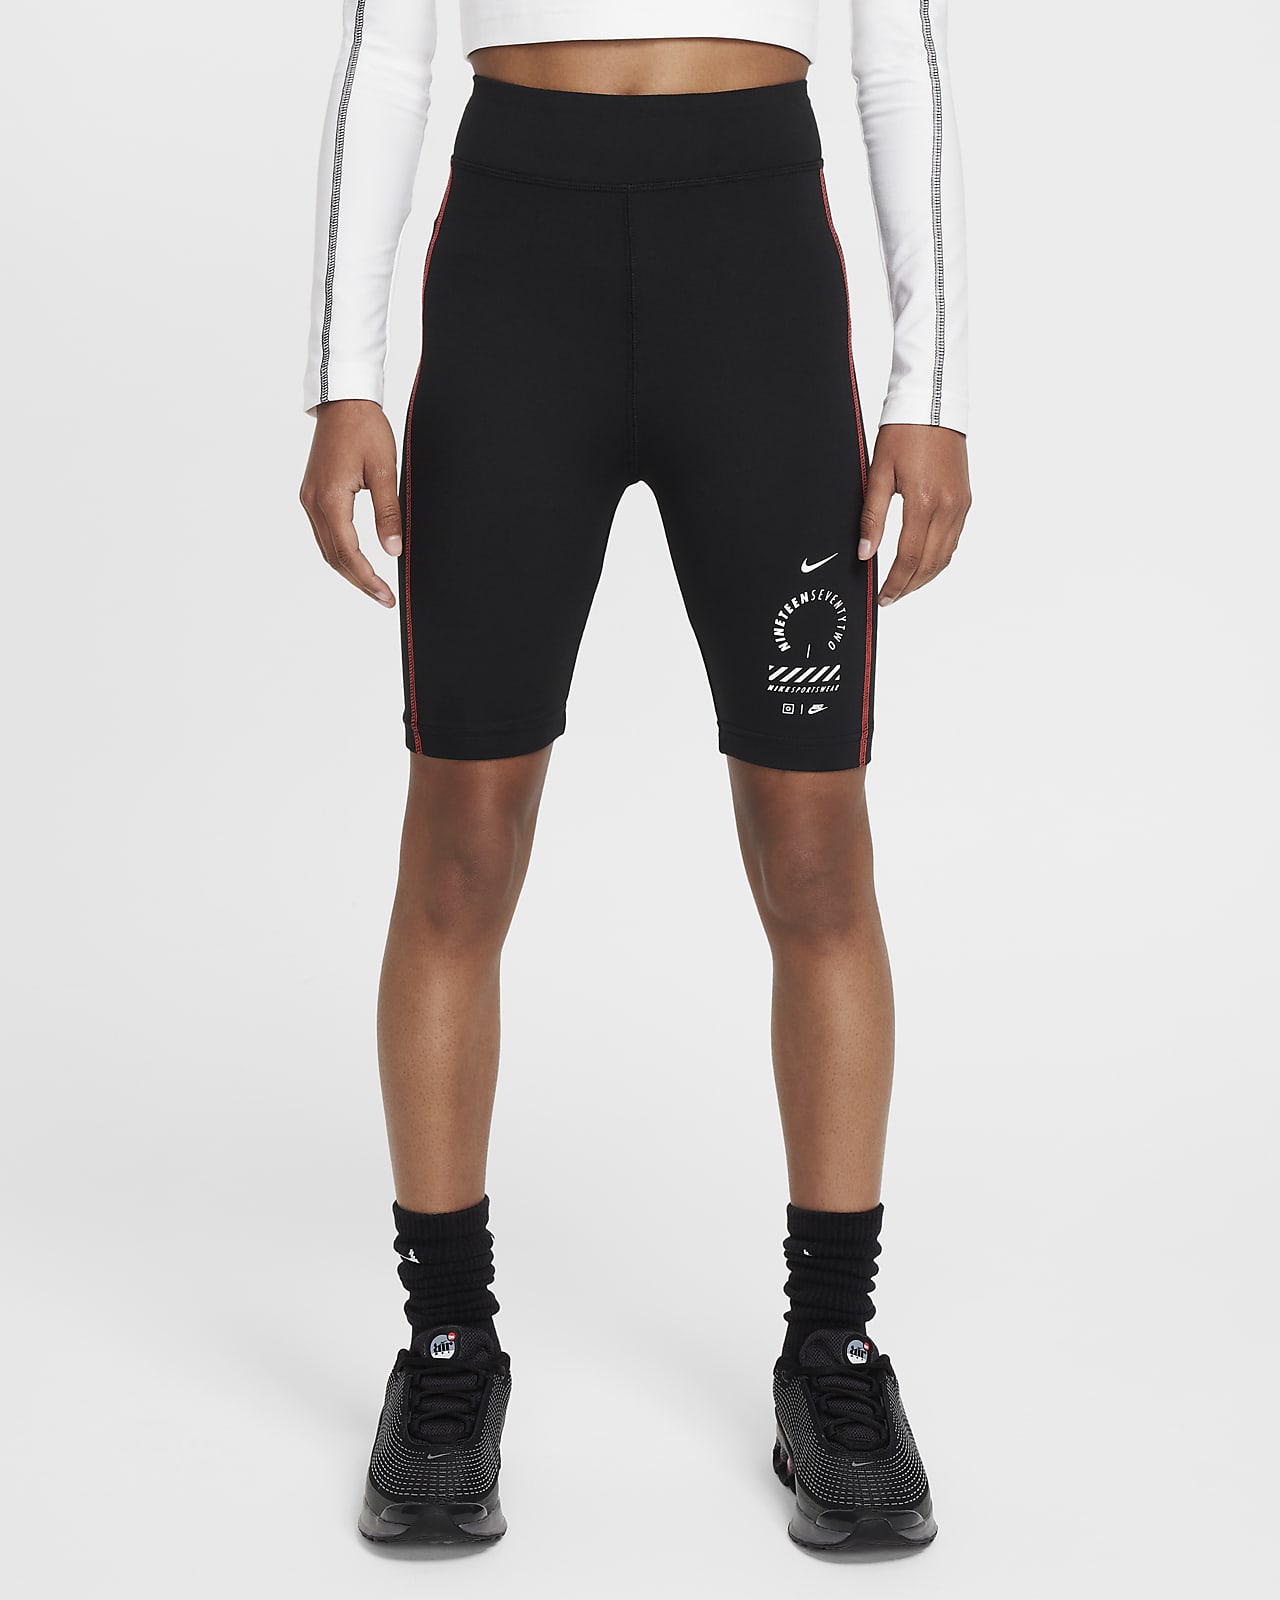 Nike Sportswear Older Kids' (Girls') 18cm (approx.) Biker Shorts